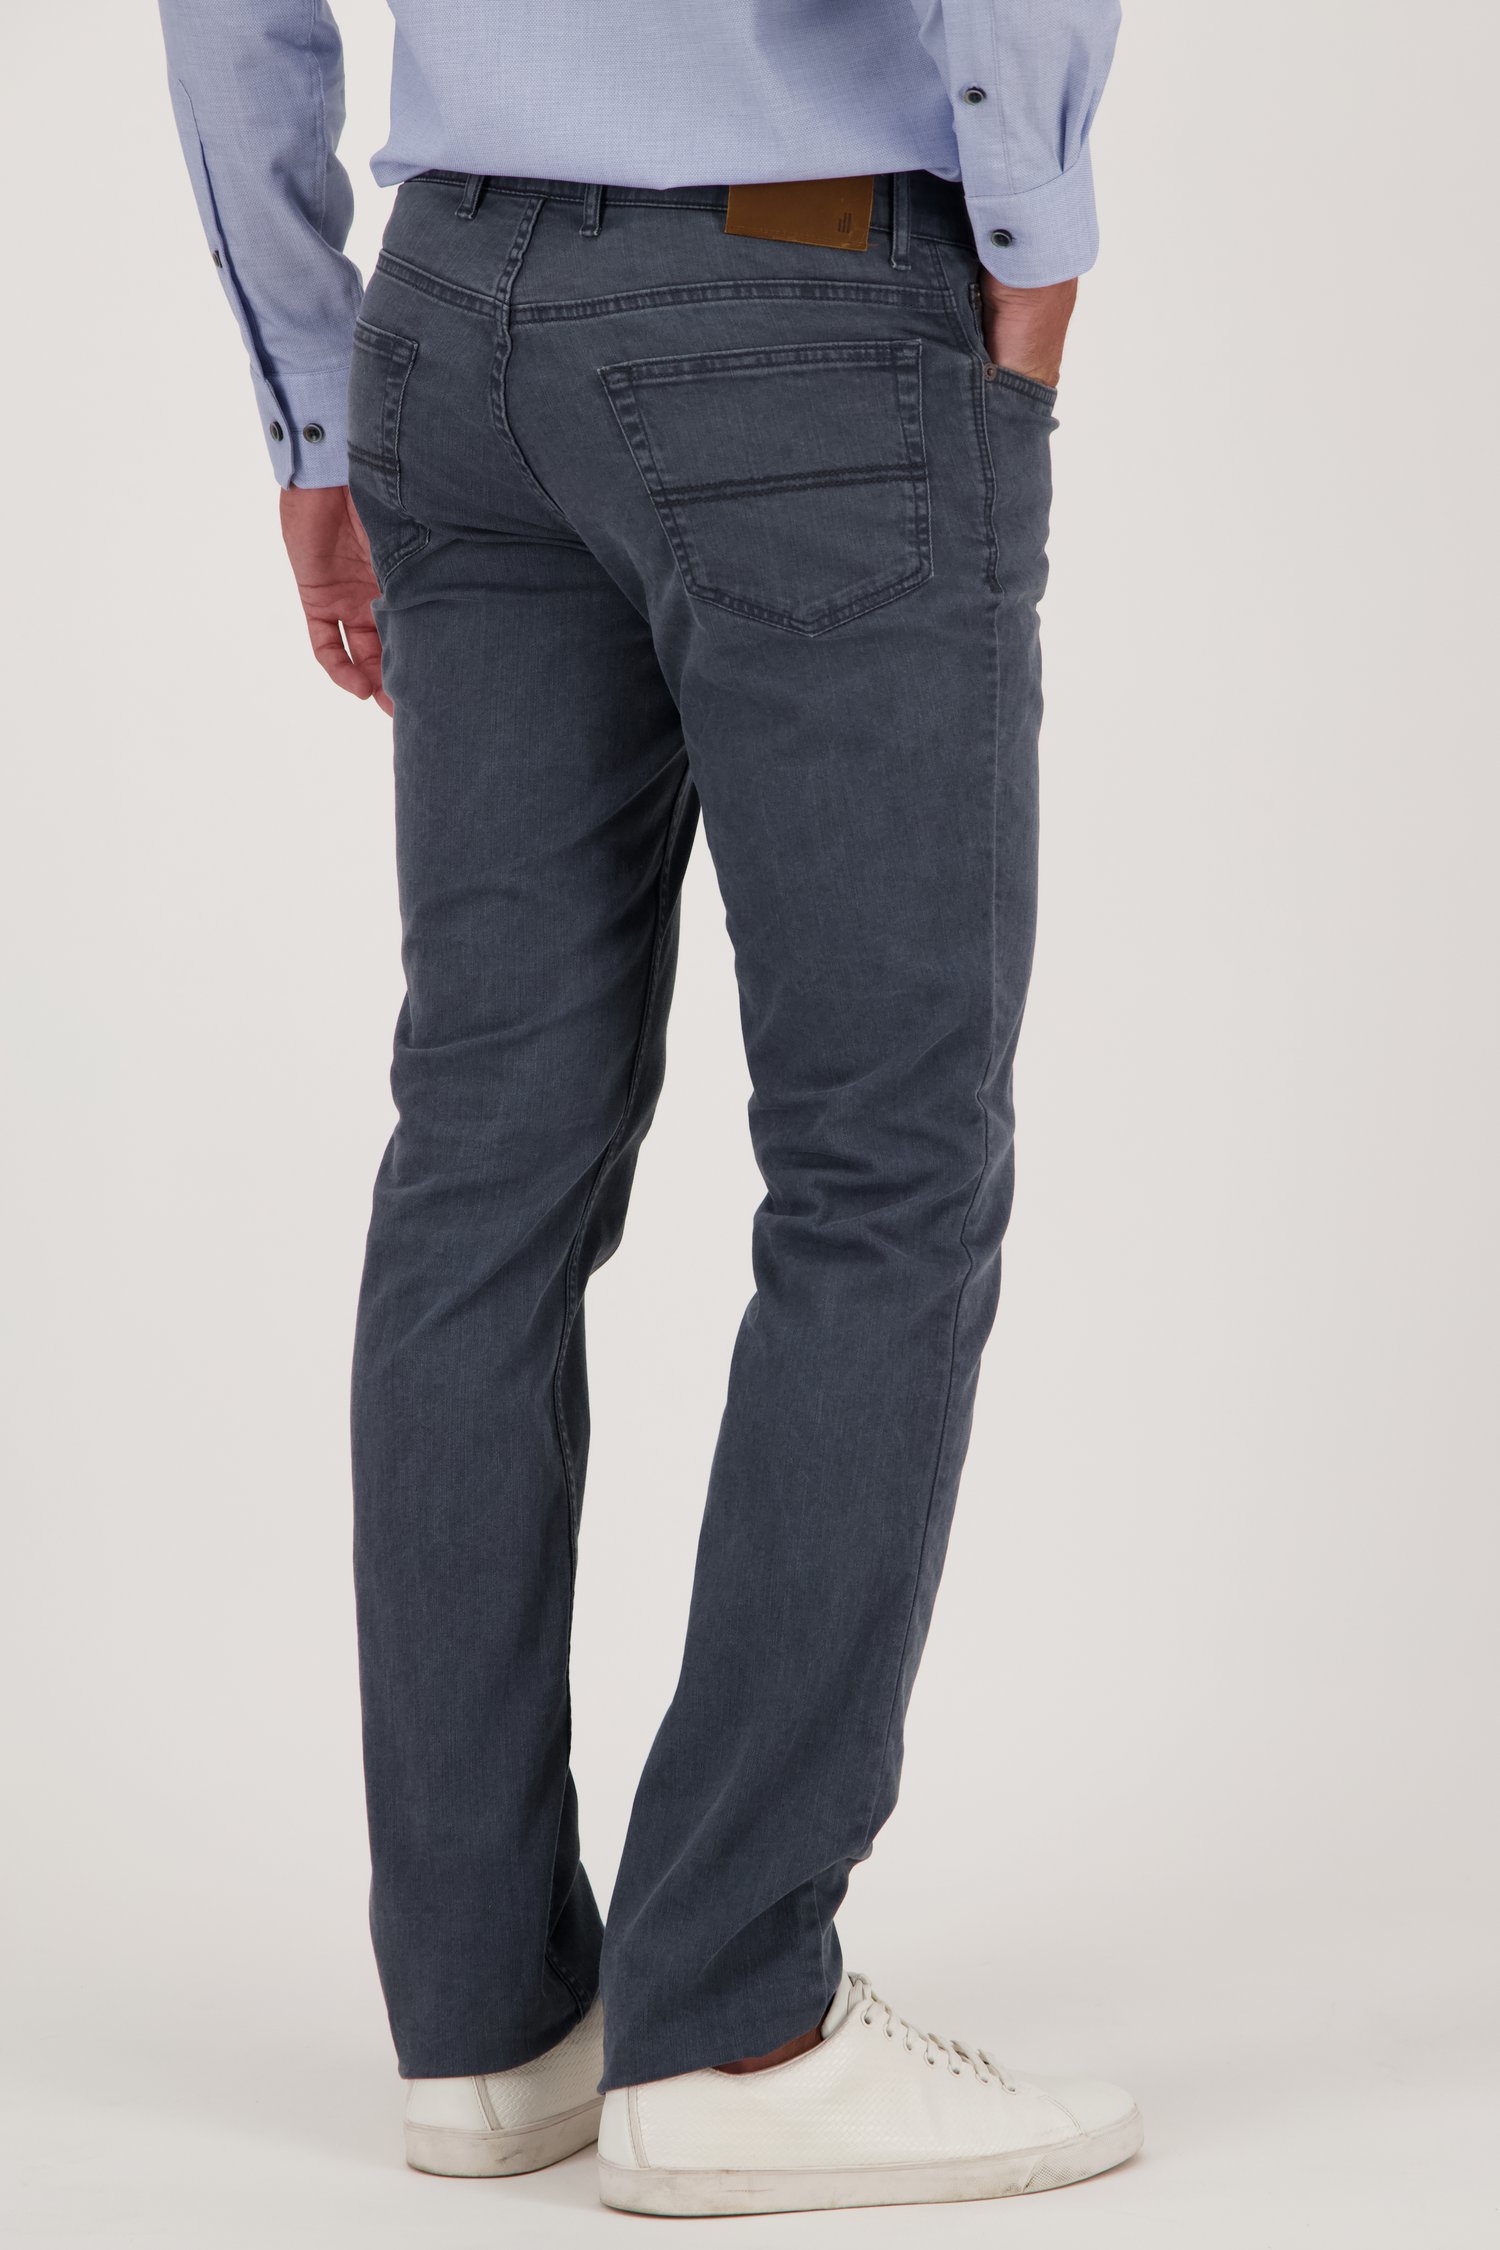 Grijs-blauwe jeans - Jackson - Regular fit van Brassville voor Heren